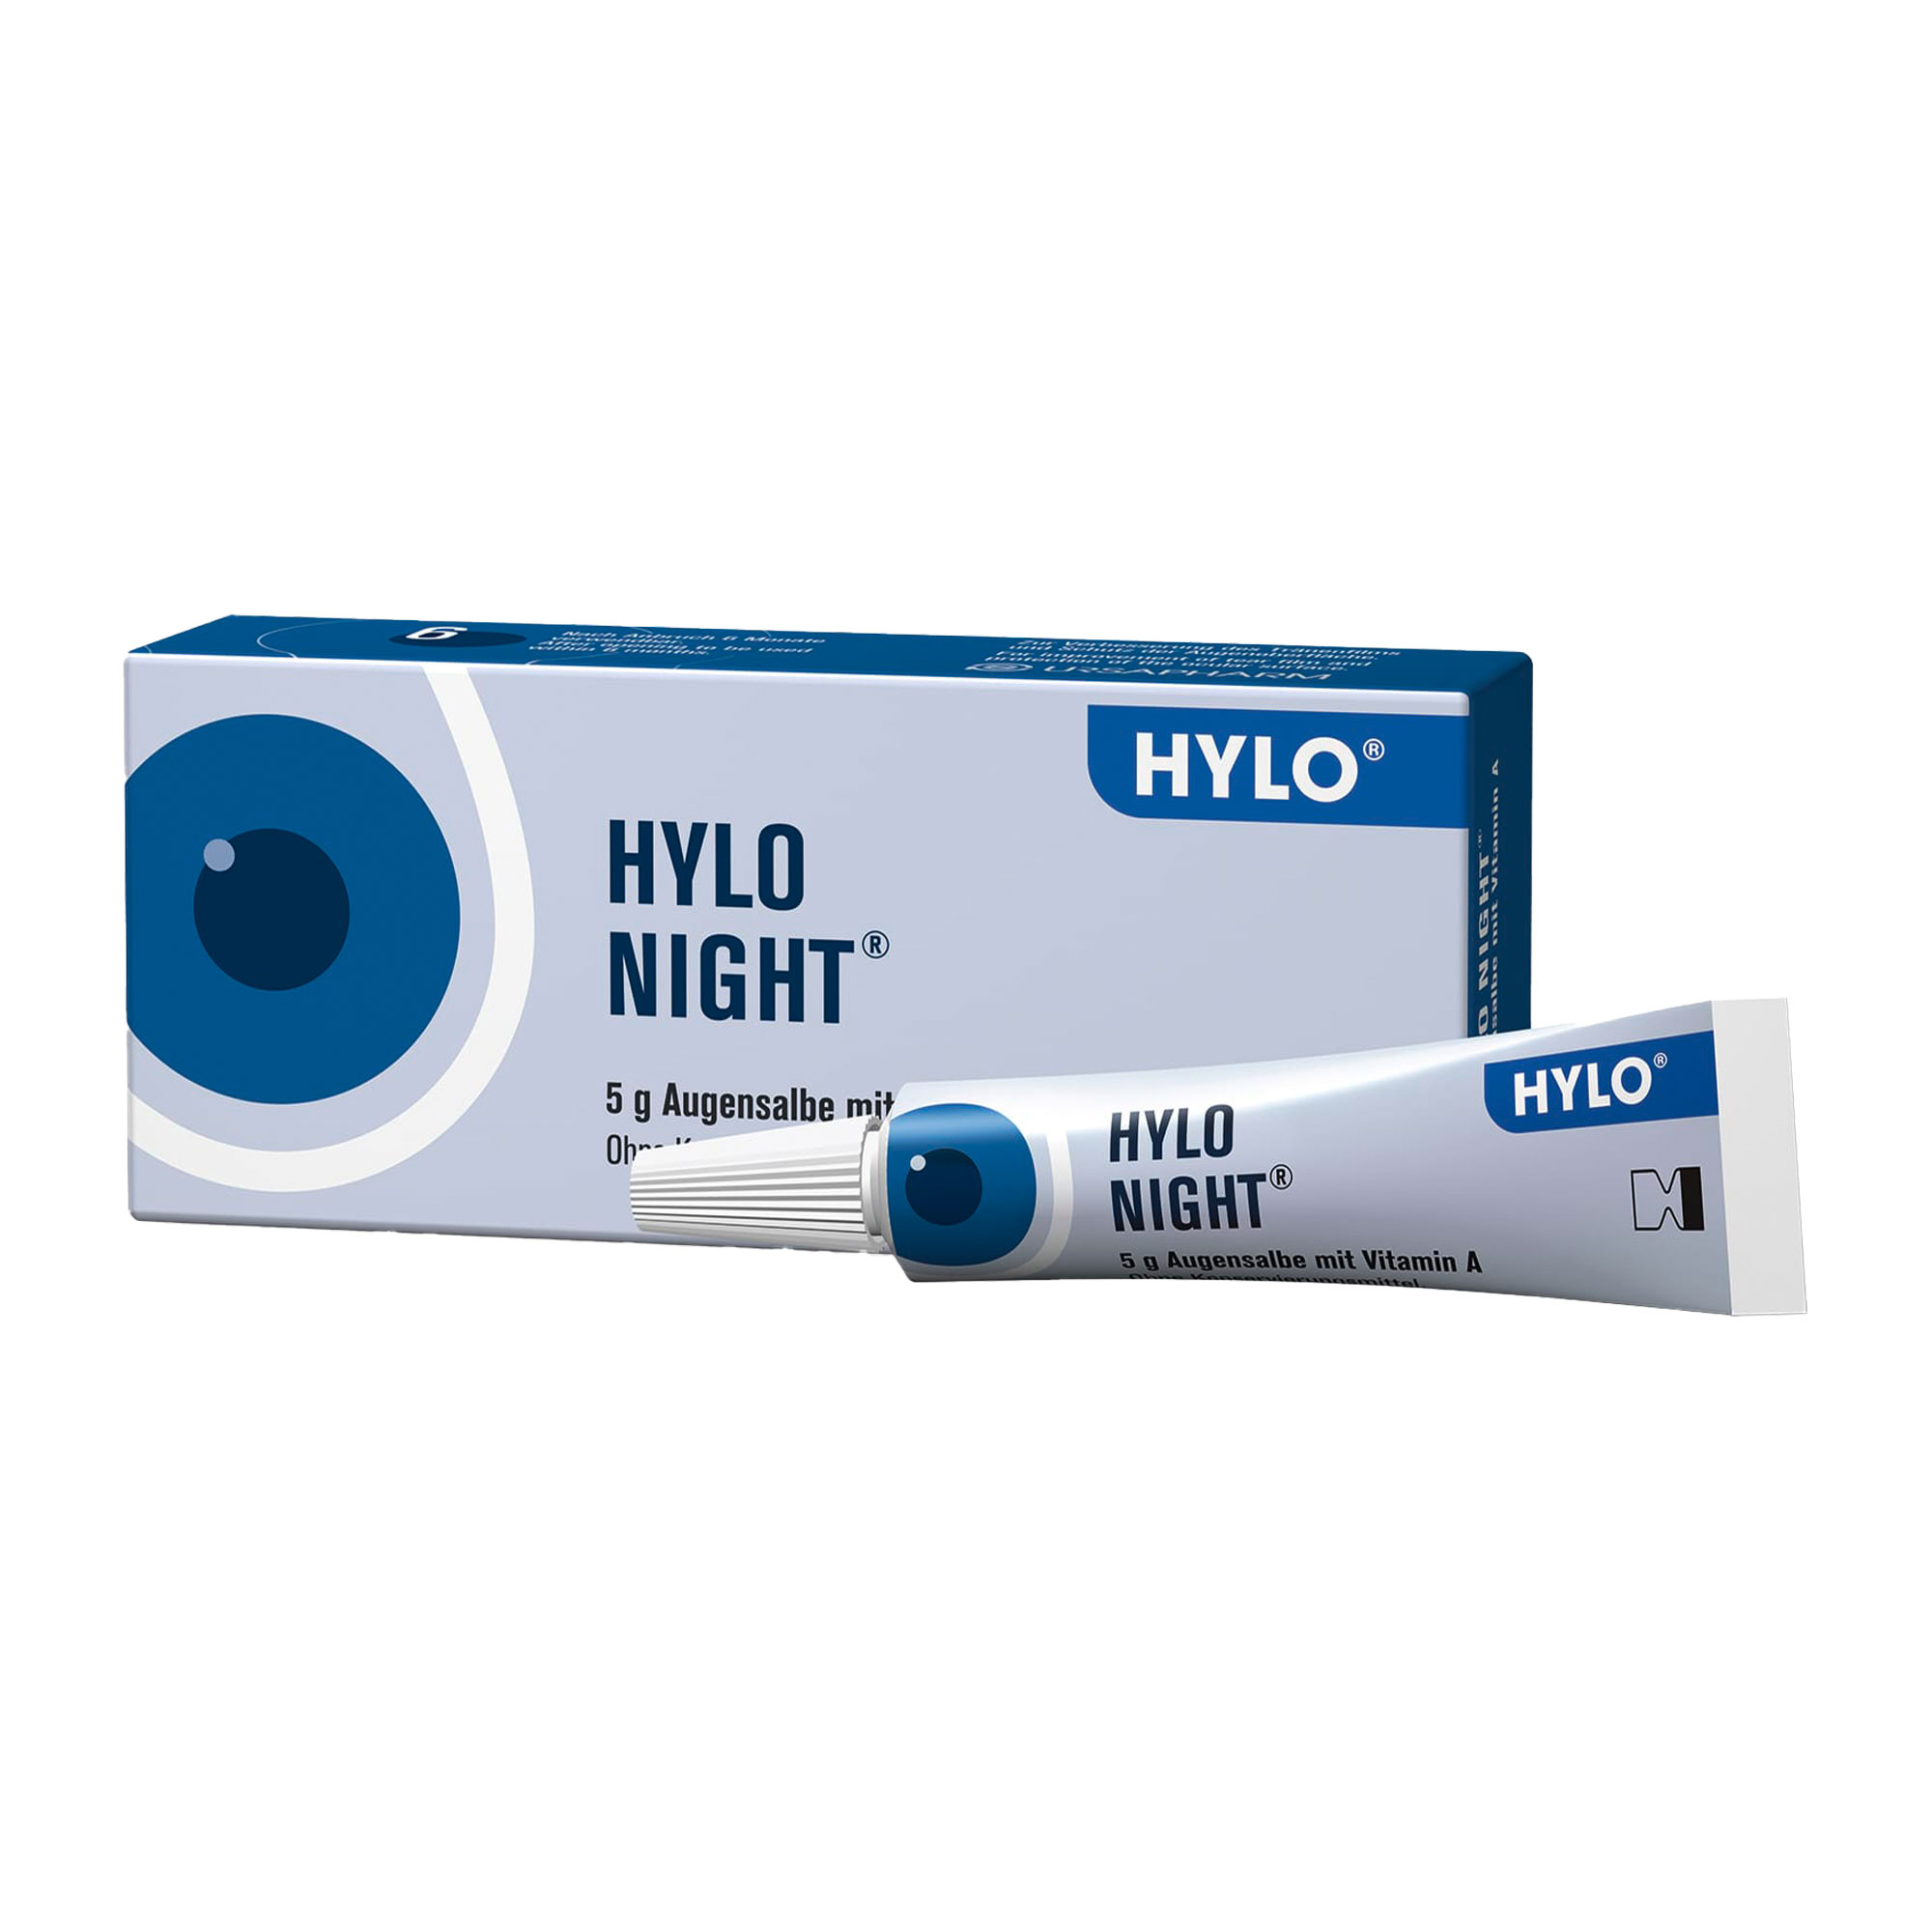 Augensalbe mit Vitamin A. Zur Verbesserung des Tränenfilms und Schutz der Augenoberfläche. Zur Anwendung in der Nacht.